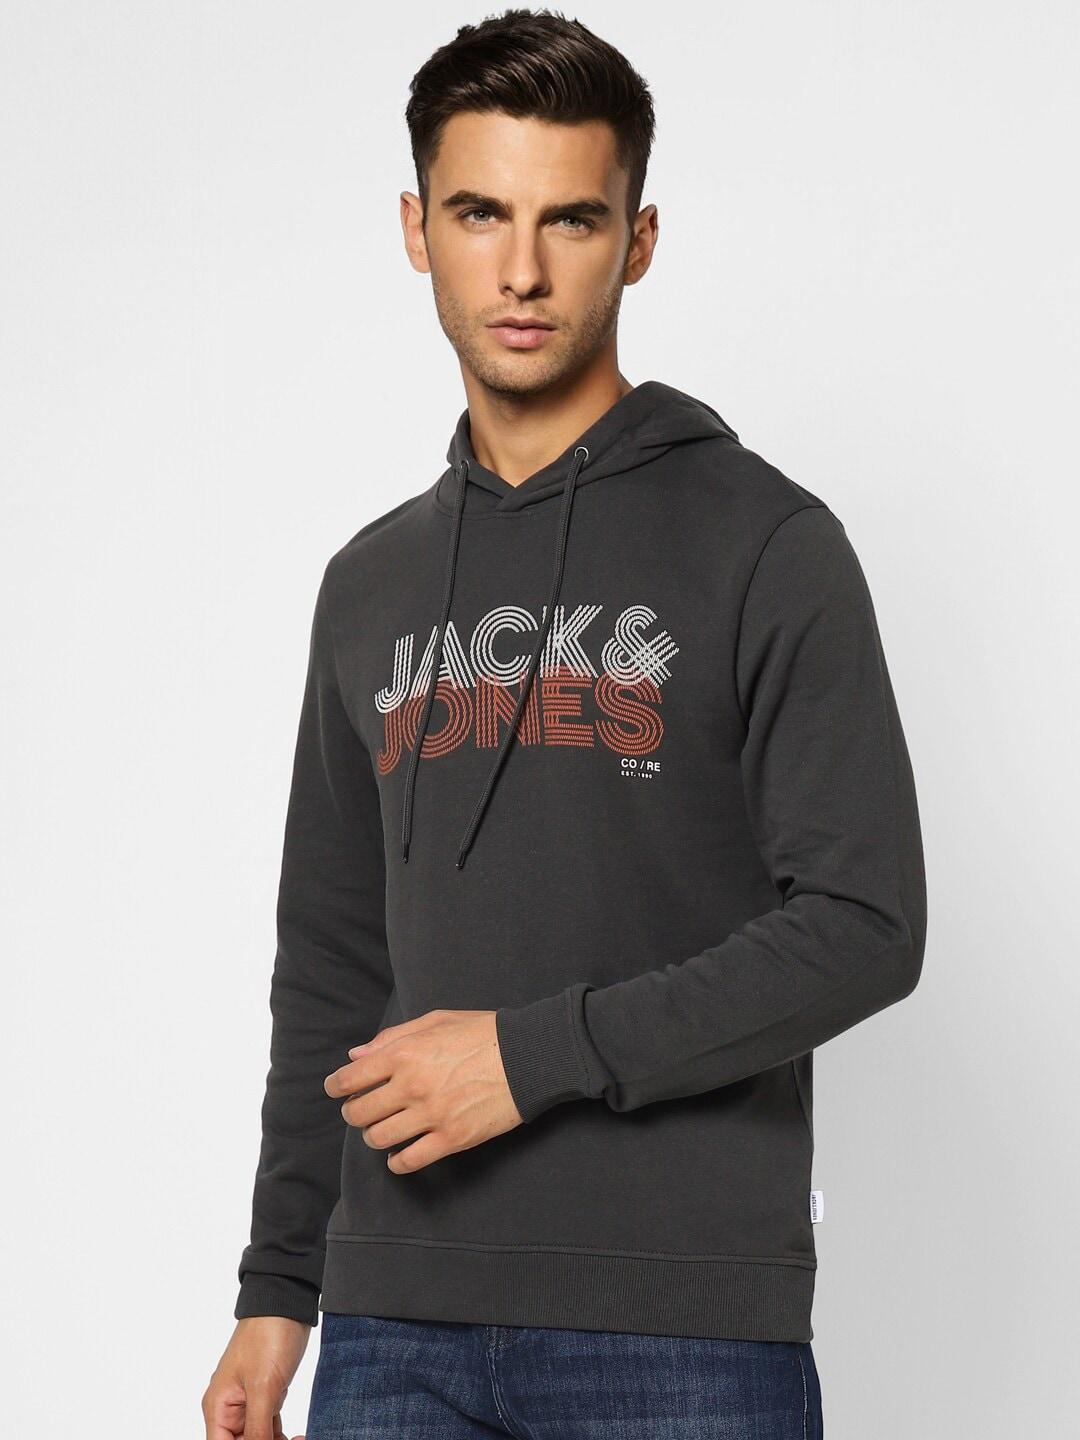 jack-&-jones-men-black-printed-hooded-sweatshirt